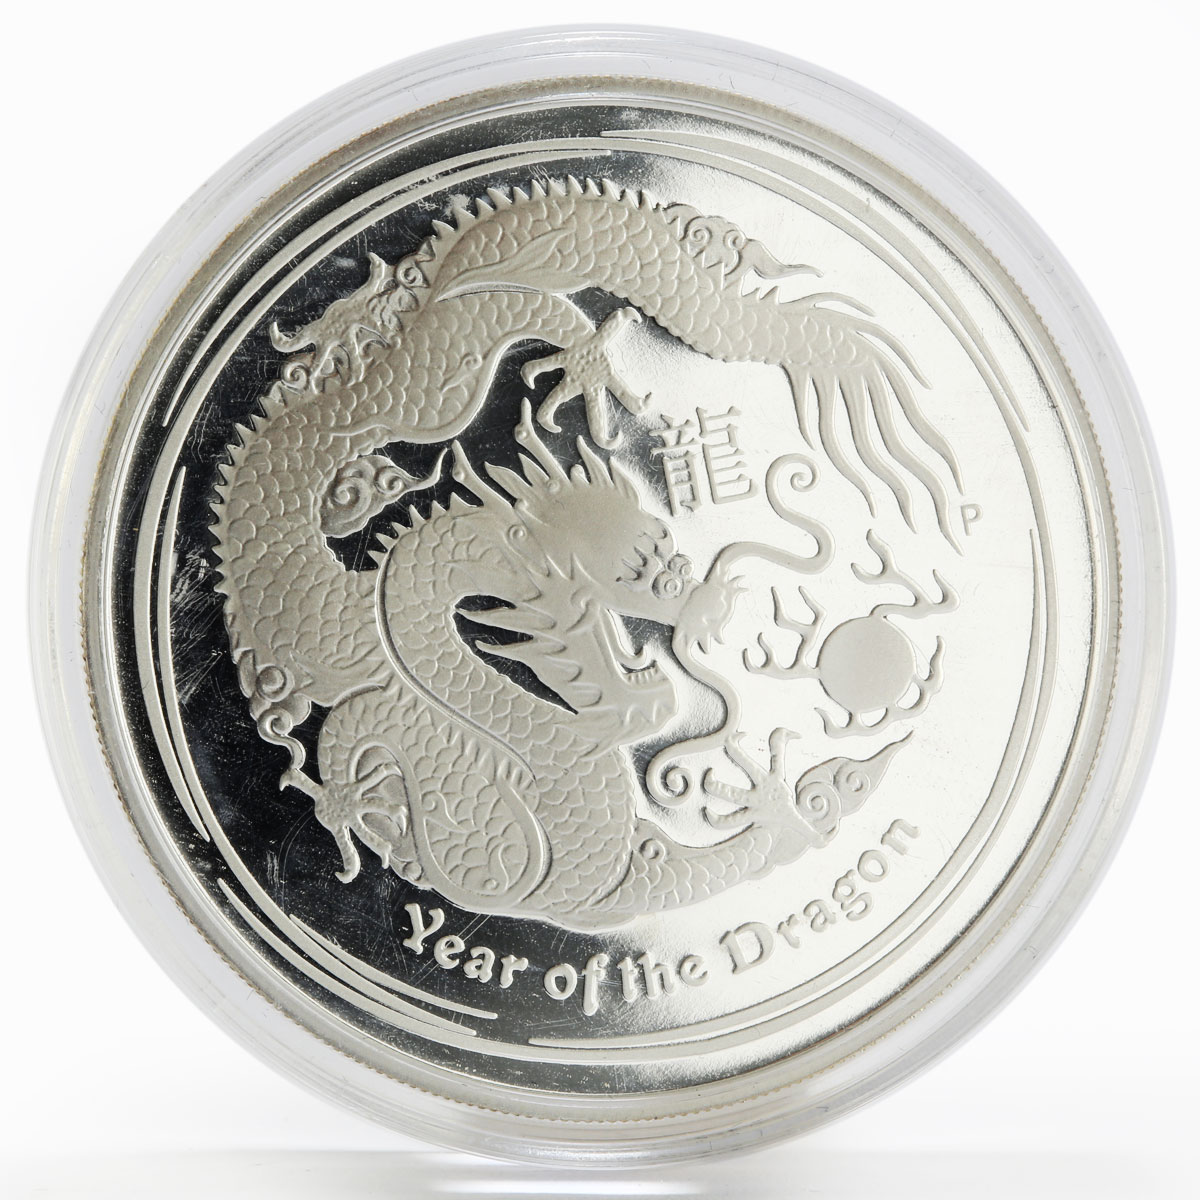 Australia 1 dollar Year of the Dragon Lunar Calendar Series II proof 1oz 2012